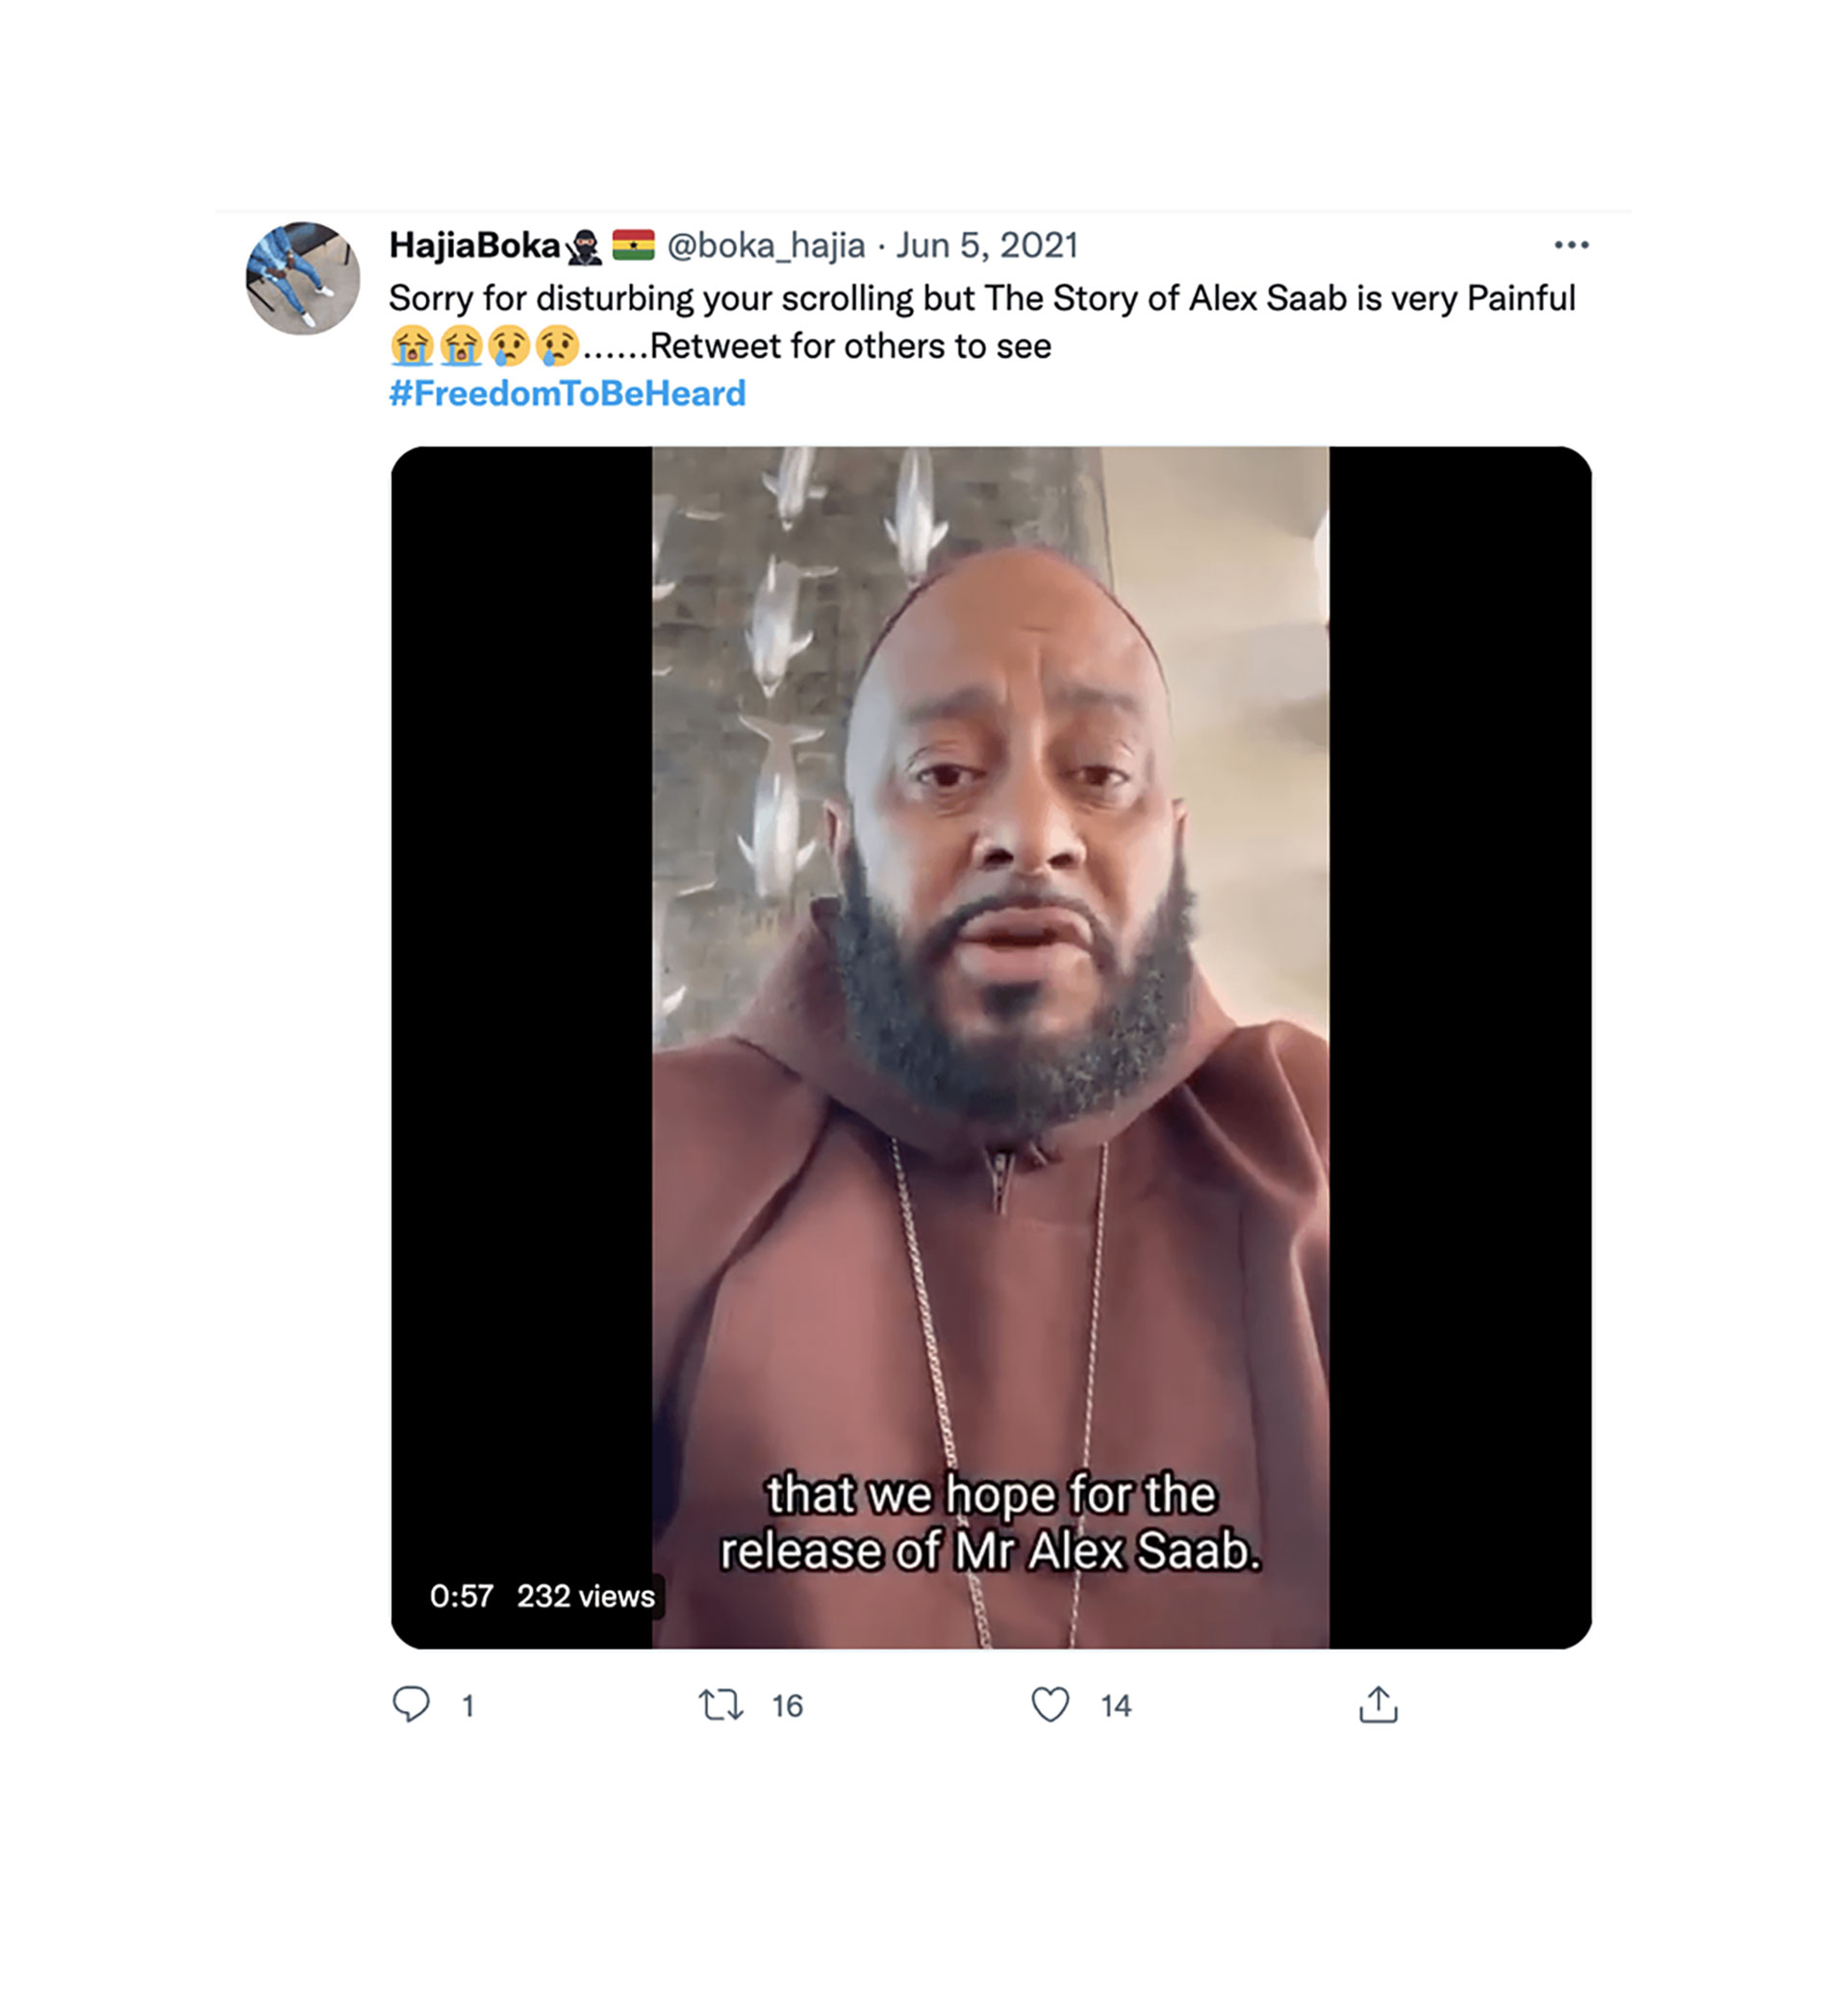 Captura de pantalla de una publicación en las redes sociales de un probable participante en la operación de influencia de Ghana que anima al gobierno de Cabo Verde a liberar a Alex Saab, utilizando el hashtag #FreedomToBeHeard previamente identificado  (Recorded Future)